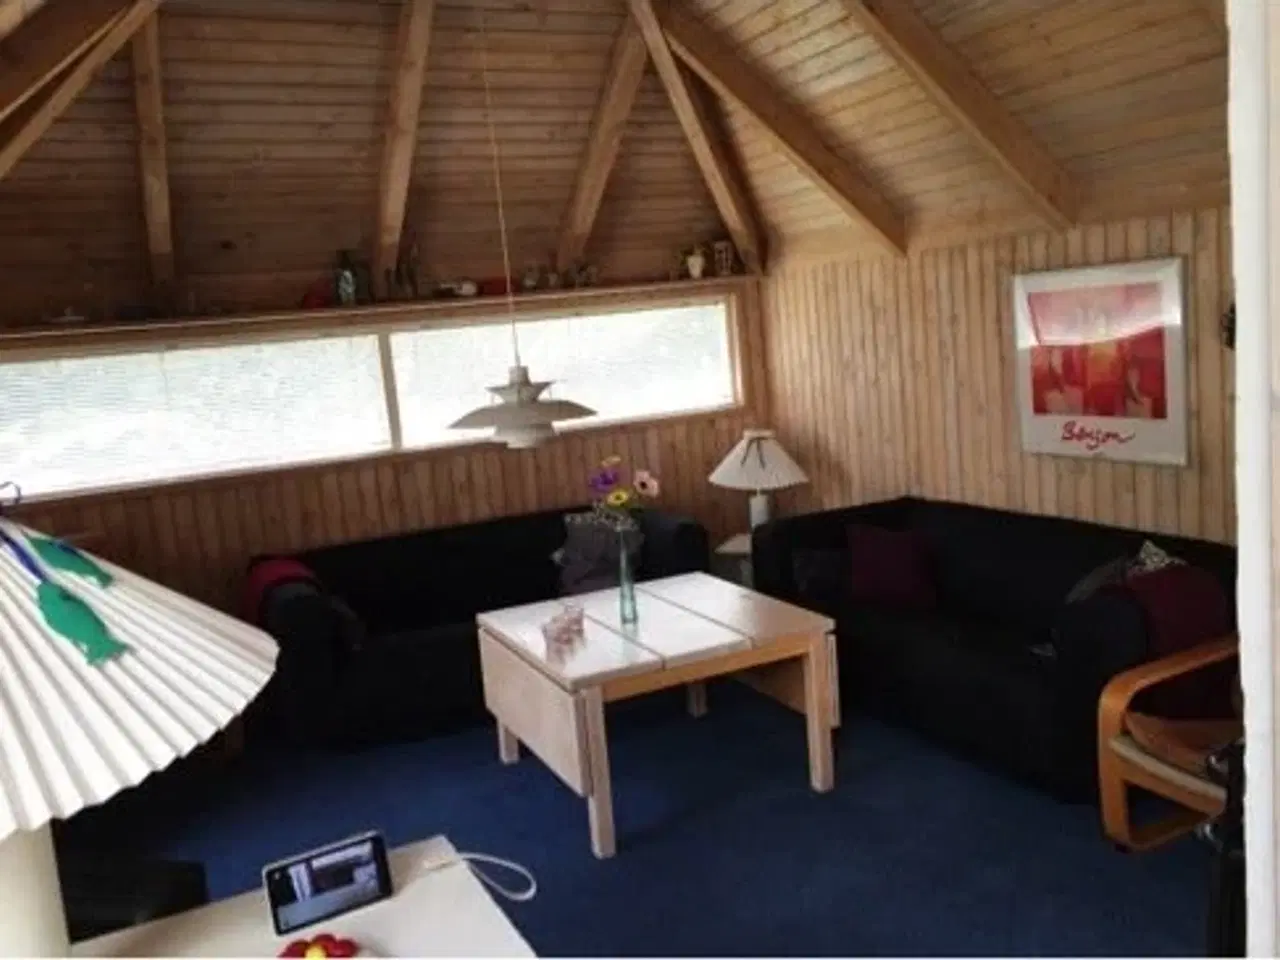 Billede 4 - Luksus sommerhus nær Vesterhavet - Svinkløv luksus feriehus til 8 personer - gratis højhastigheds internet

Slutrengøring er inkluderet i prisen.